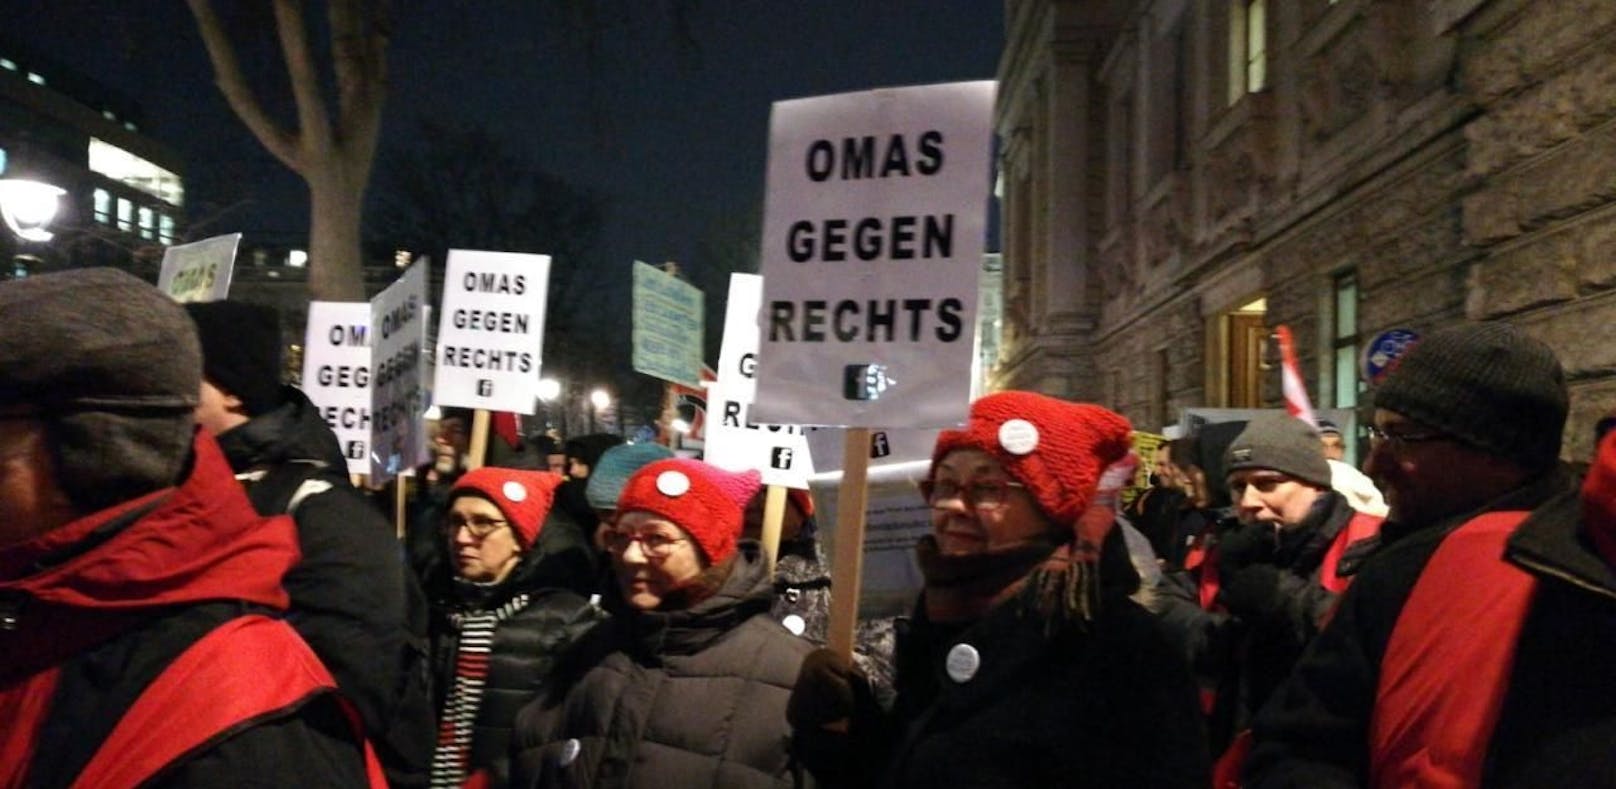 Auch die &quot;Omas gegen Rechts&quot; marschieren bei den Donnerstagsdemos mit.